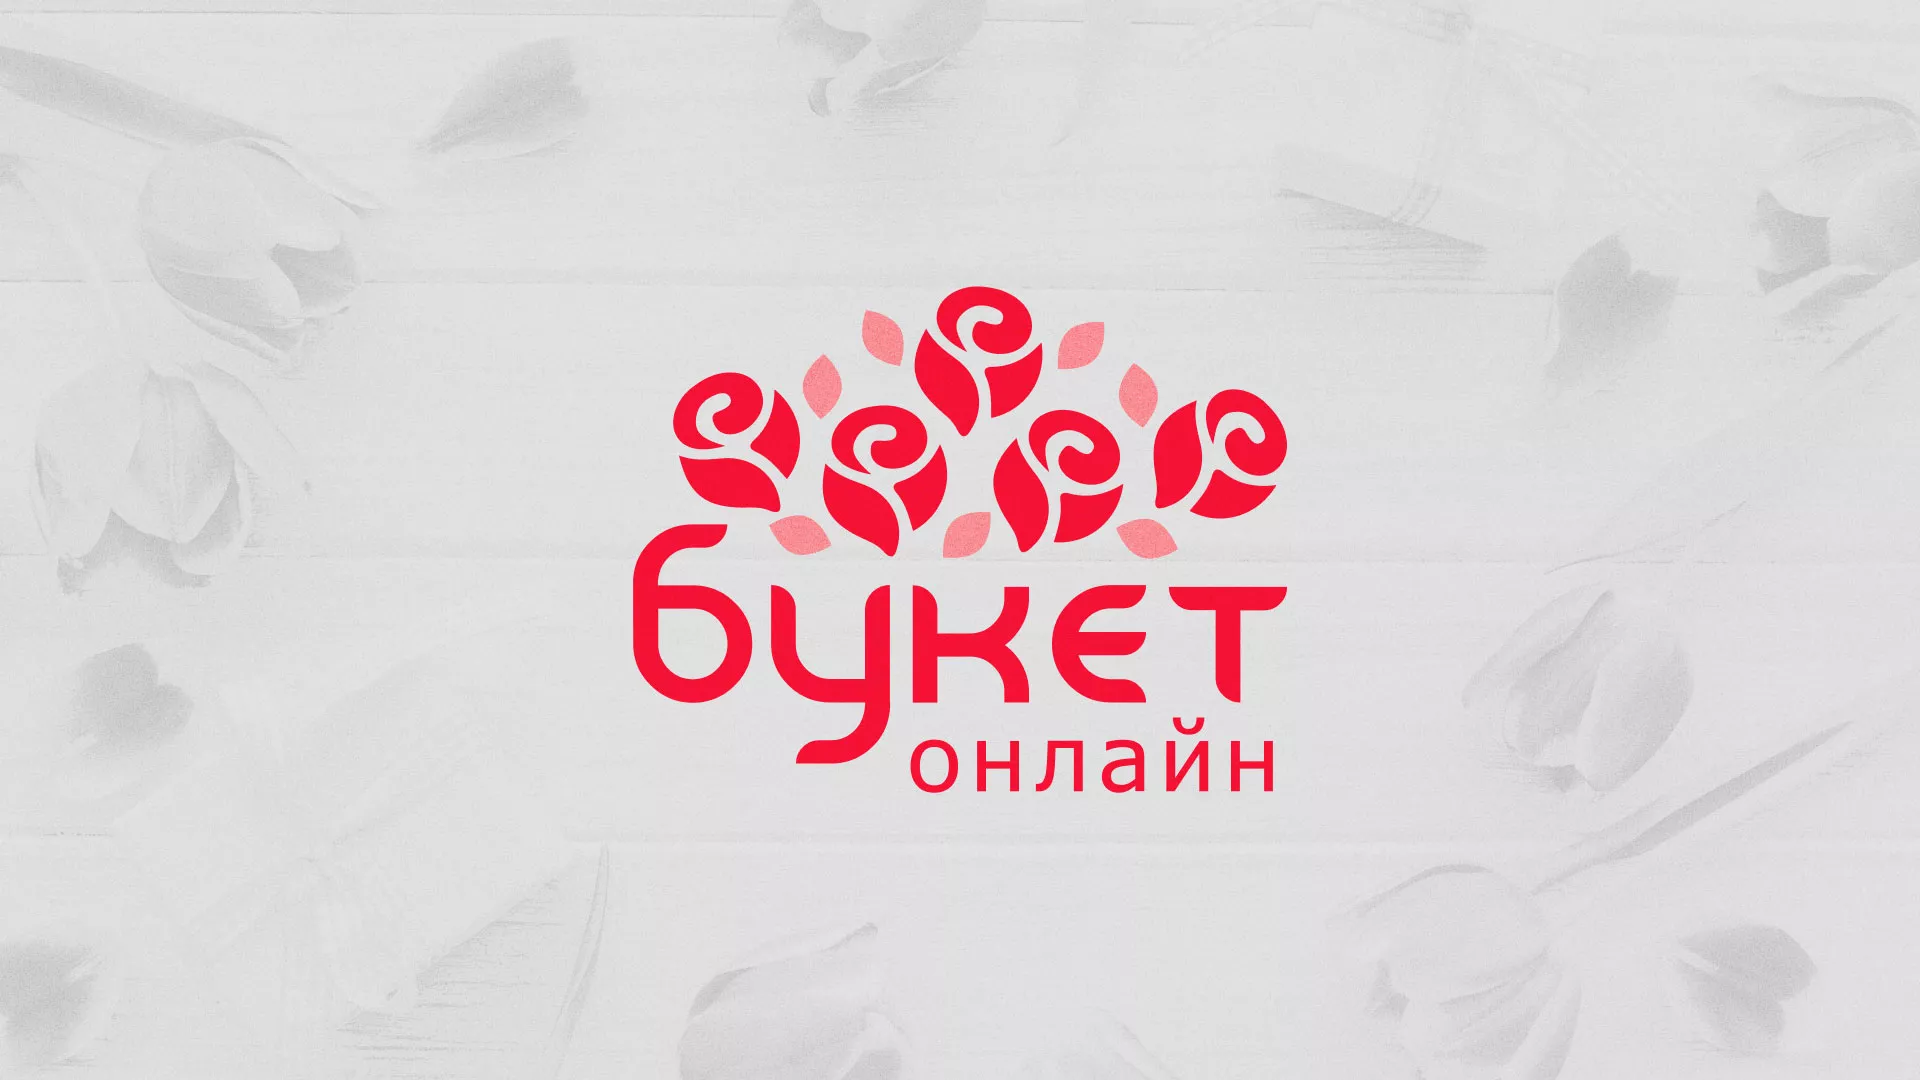 Создание интернет-магазина «Букет-онлайн» по цветам в Суздале